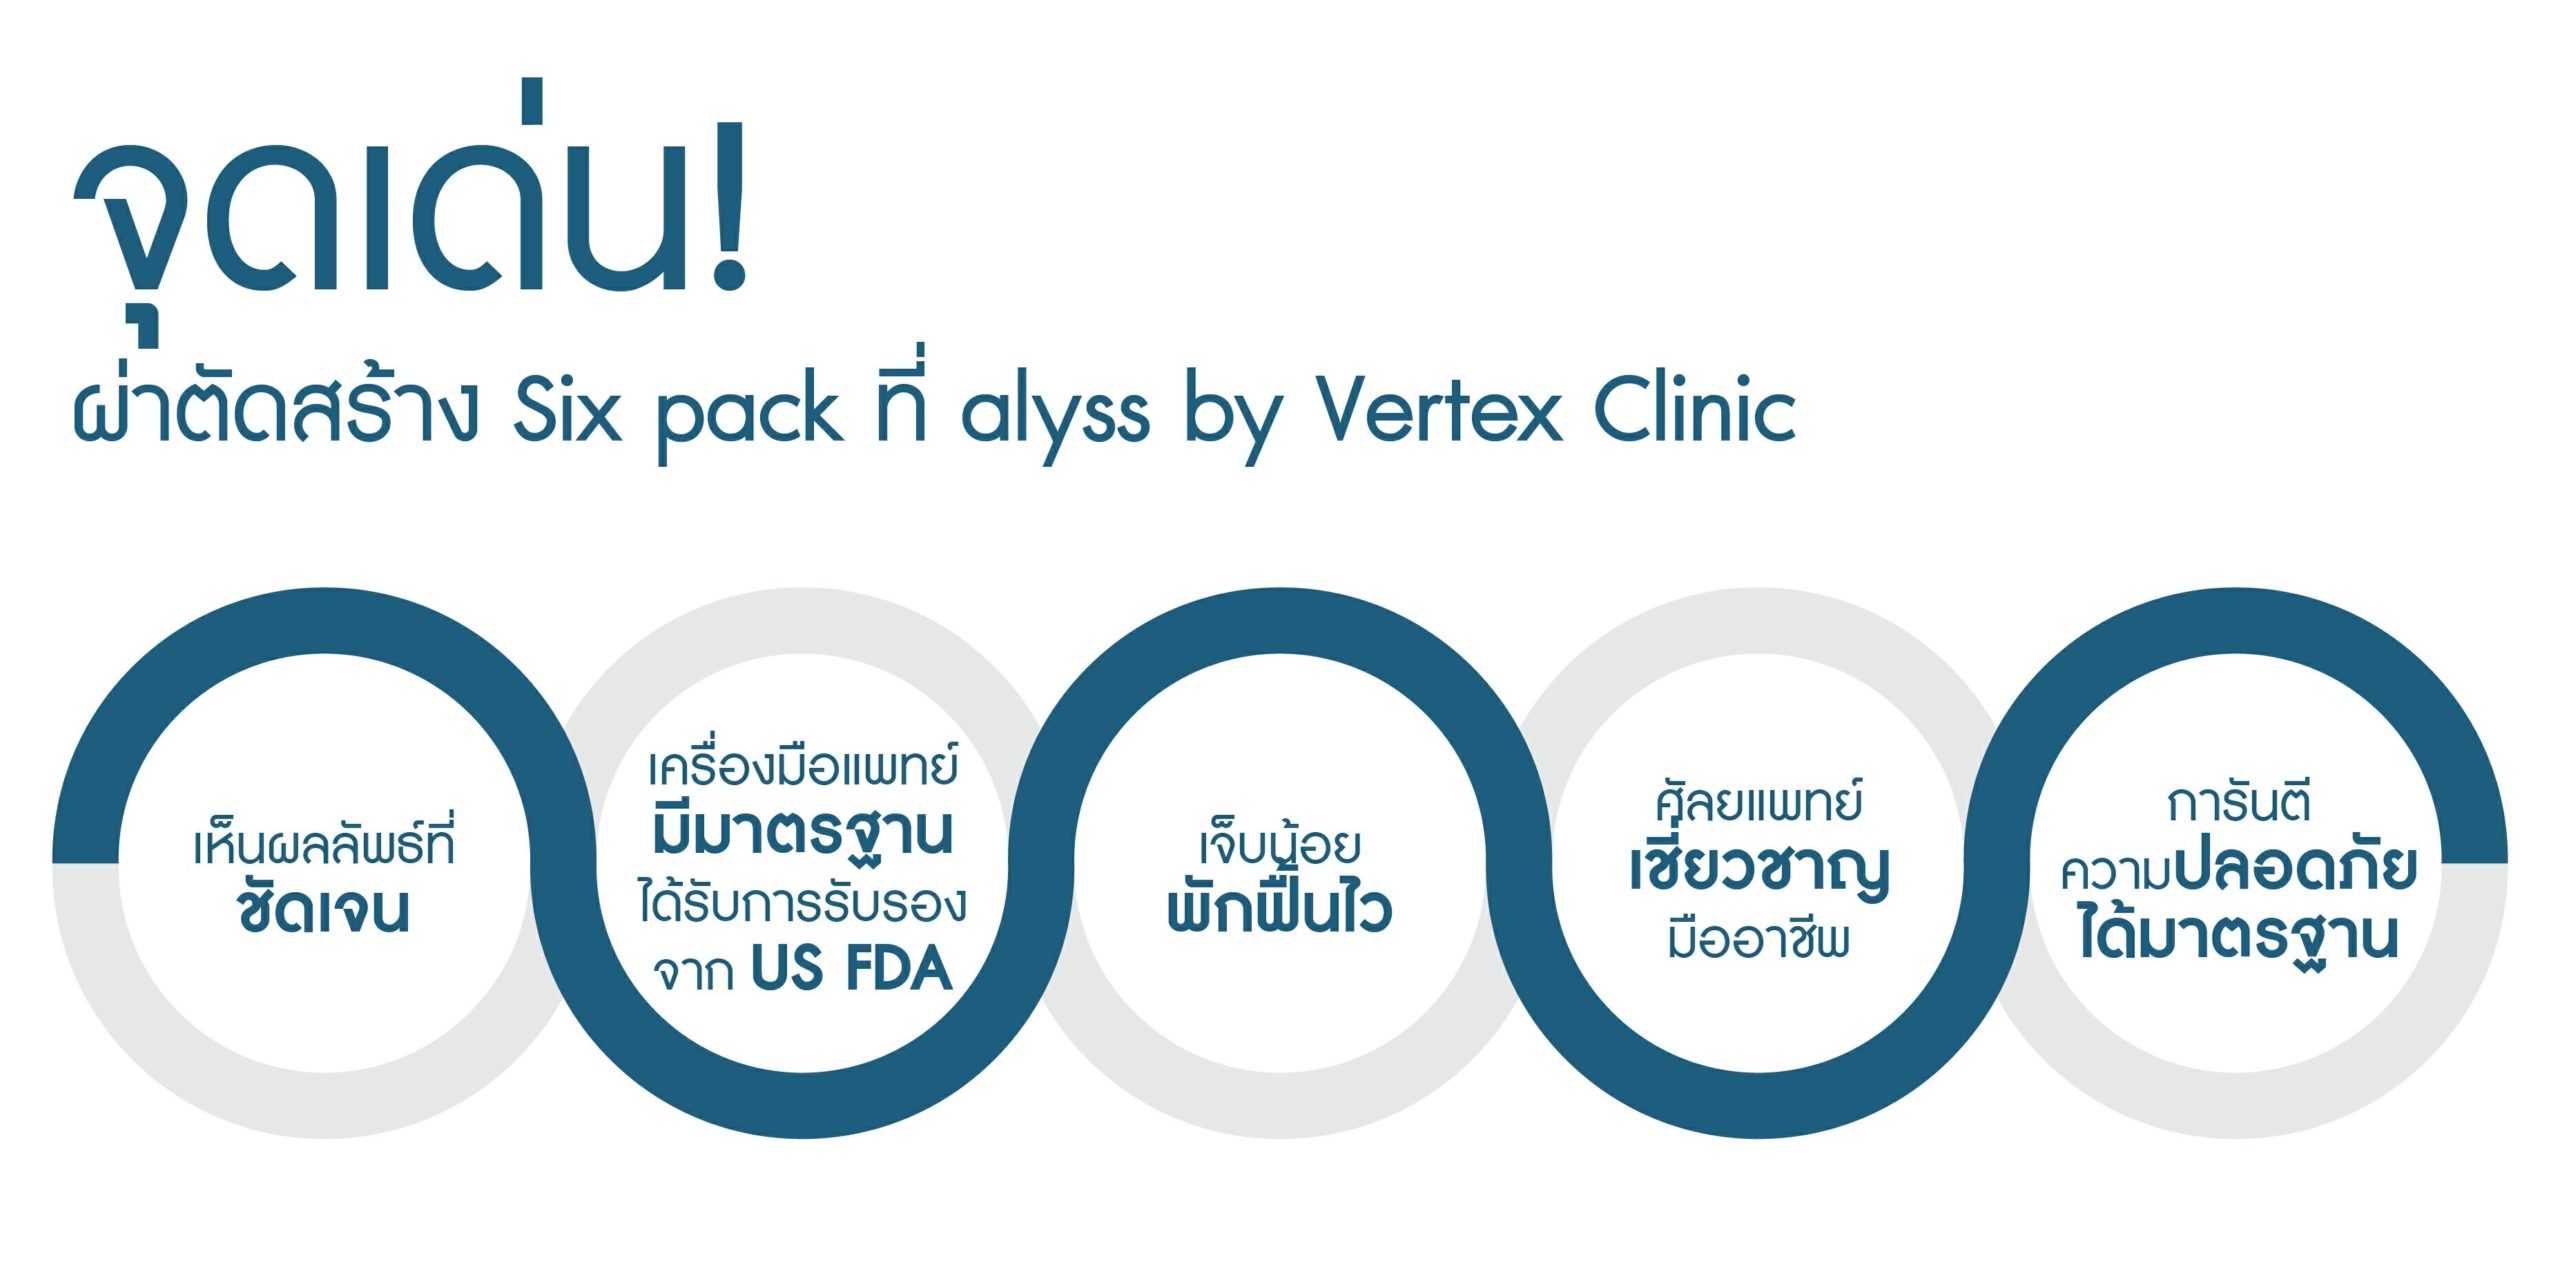 alyss by Vertex Clinic พร้อมด้วยศัลยแพทย์มากความสามารถและอุปกรณ์ที่ได้มาตรฐาน